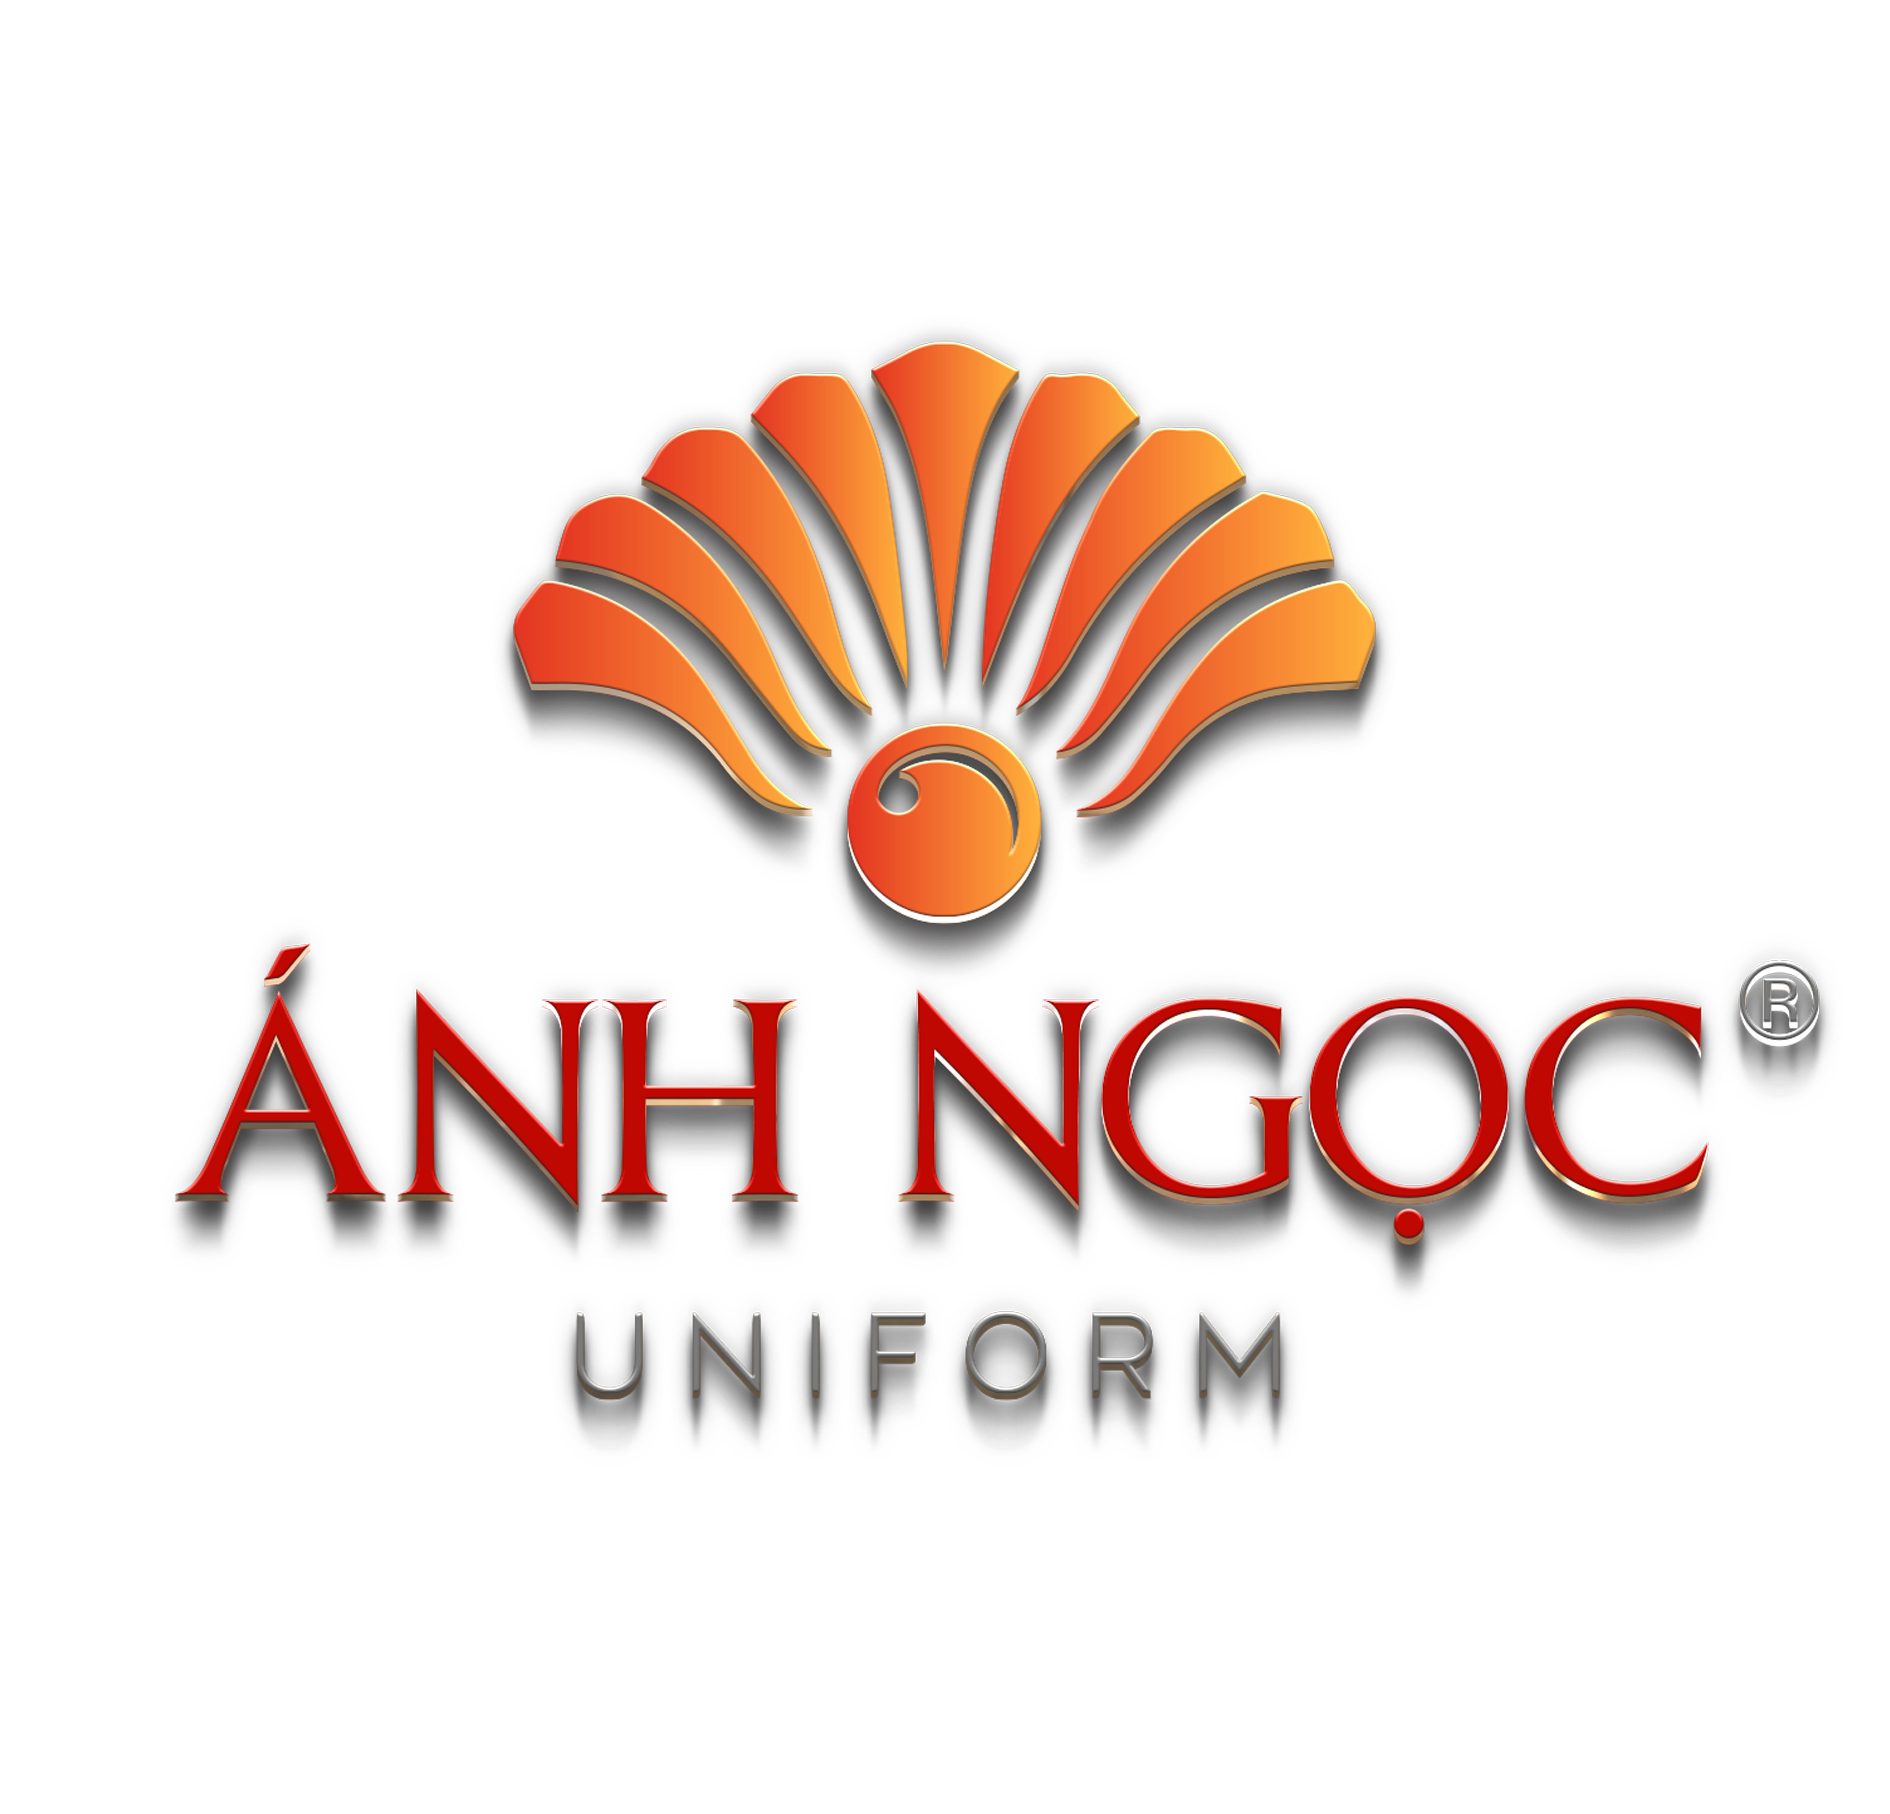 Đồng phục Ánh Ngoc – ANH NGOC Uniform | Chuyên may áo thun, đồng phục công ty, đồng phục sự kiện, quảng cáo …